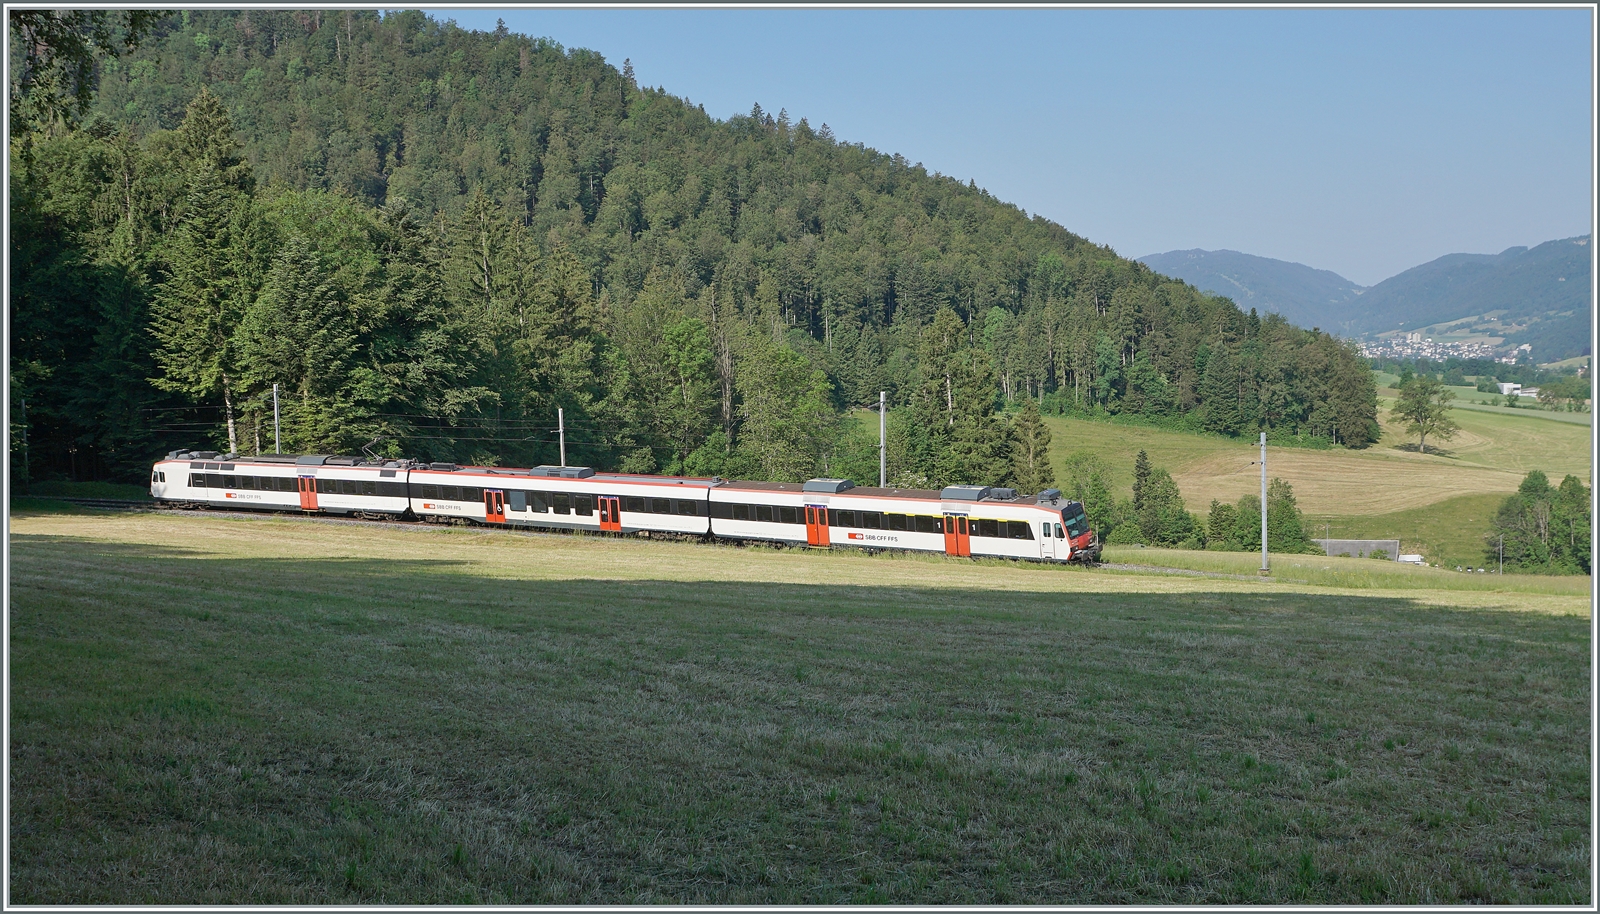 Eine knappe Stunde später oberhalb von Crémines folgt die S21 7831 von Solothurn nach Moutier, ebenfalls in Form eines SBB Domino, welcher auf dem kurzen sonnigen Abschnitt kaum Platz findet. Im rechten Bildteil schweift der Blick bis nach Moutier, das im Hintergrund zu erkennen ist. 

5. Juni 2023